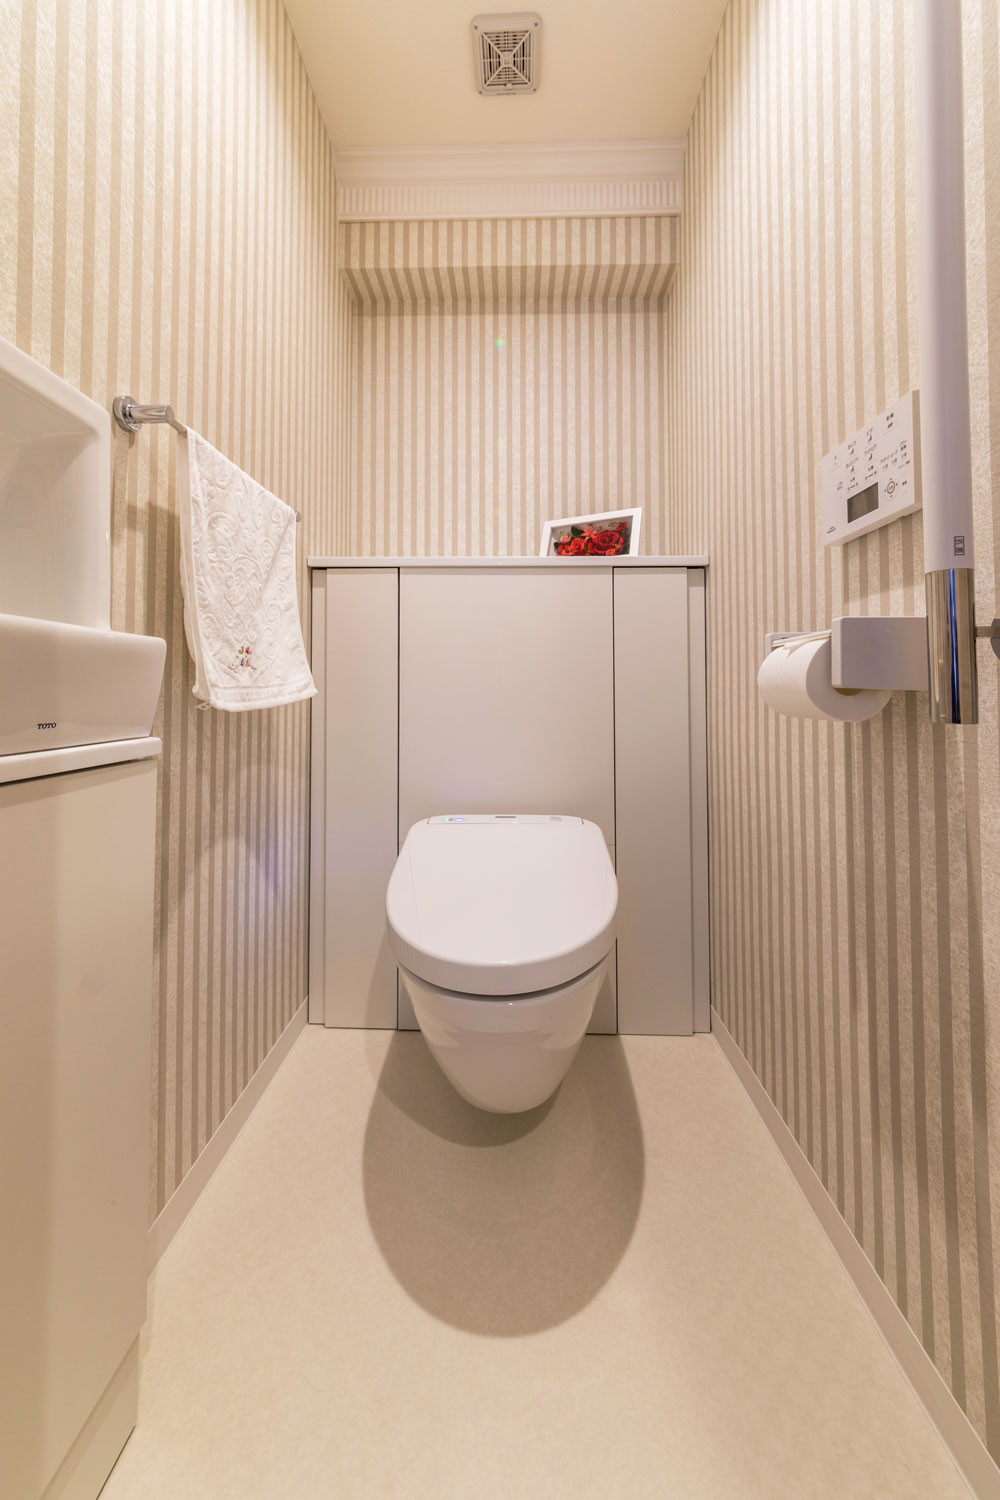 便器が床に接触していないフローティングトイレは、清掃性が抜群。